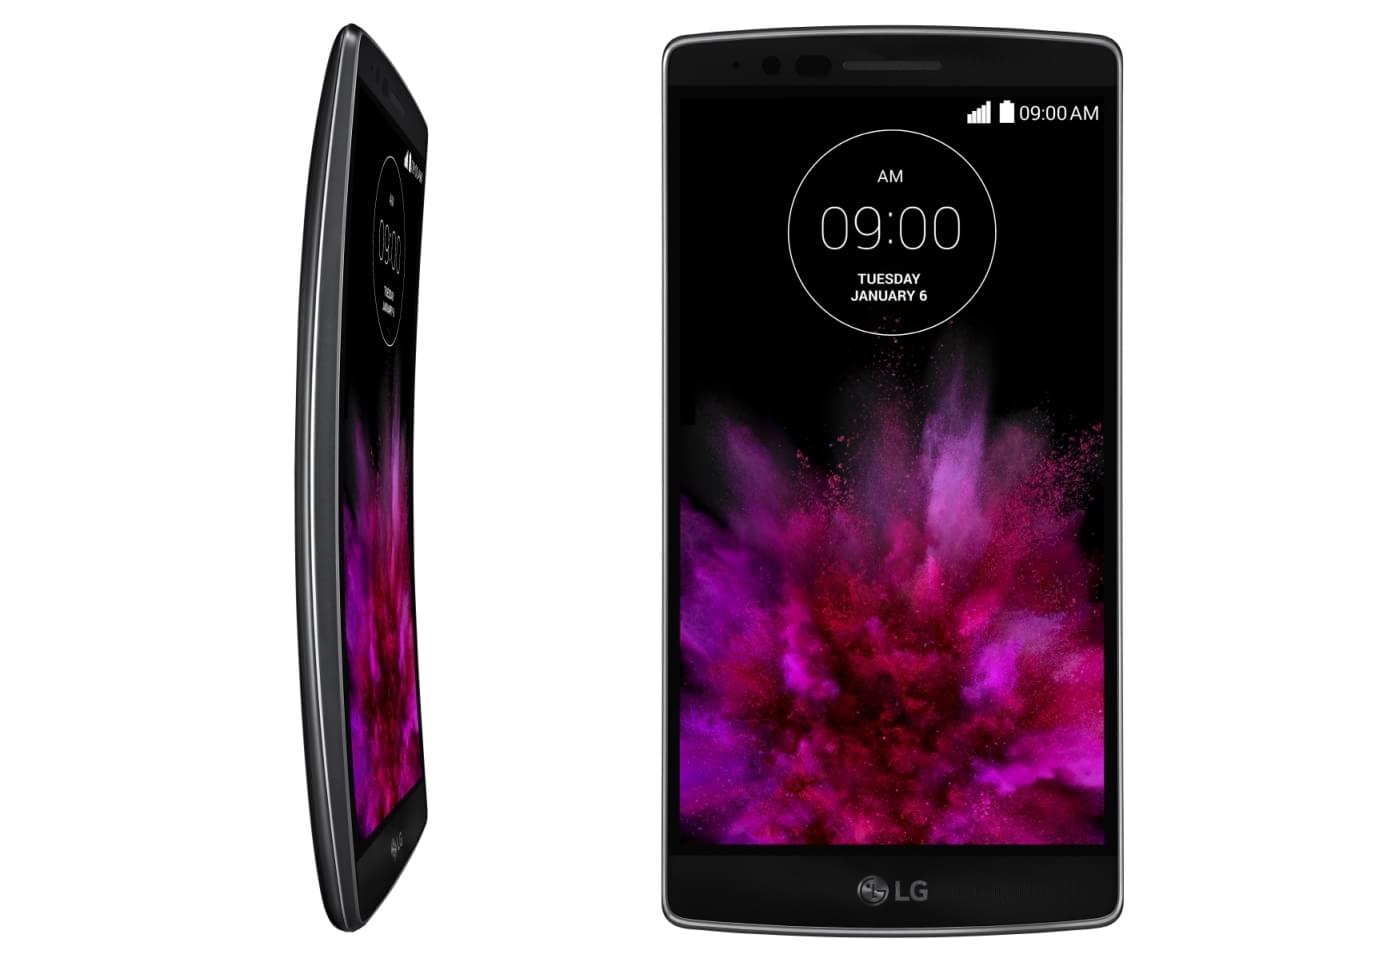 [Android] LG G Flex 2, o primeiro smartphone equipado com o Snapdragon 810 05104047753133